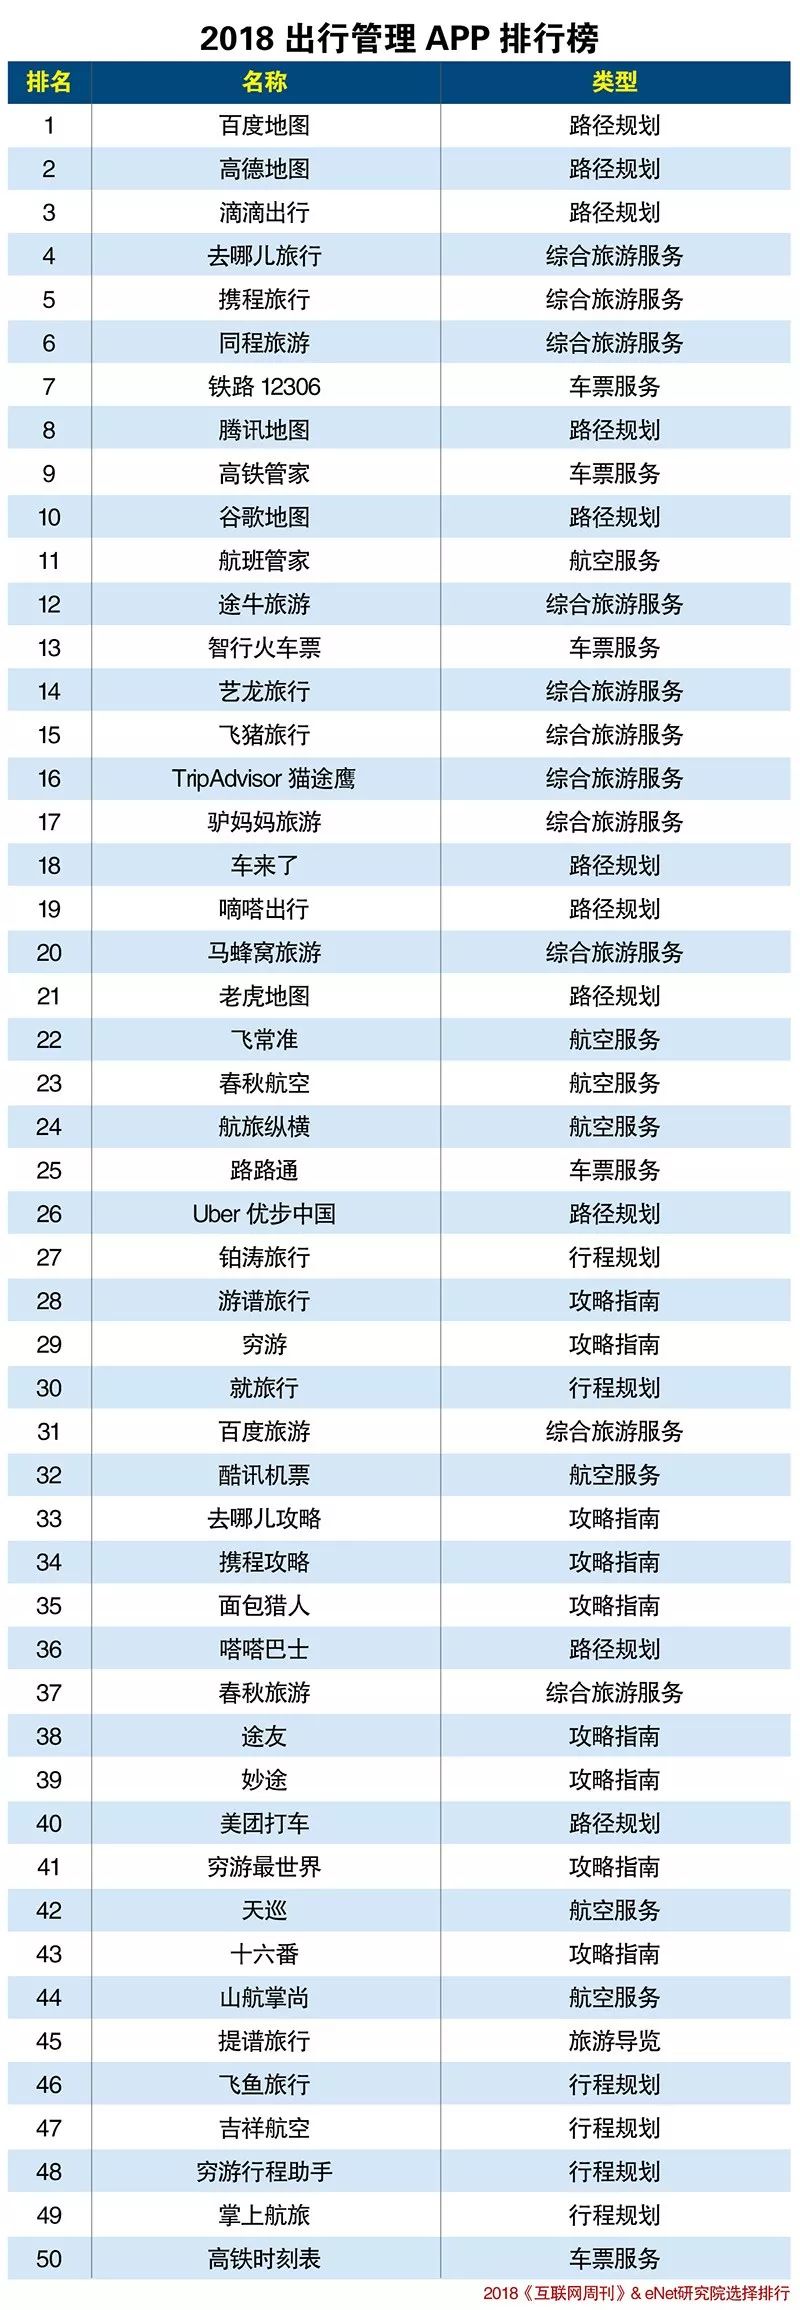 旅游app排行榜_榜单4月在线旅游APP月活TOP31均上涨:携程去哪儿飞猪马蜂...